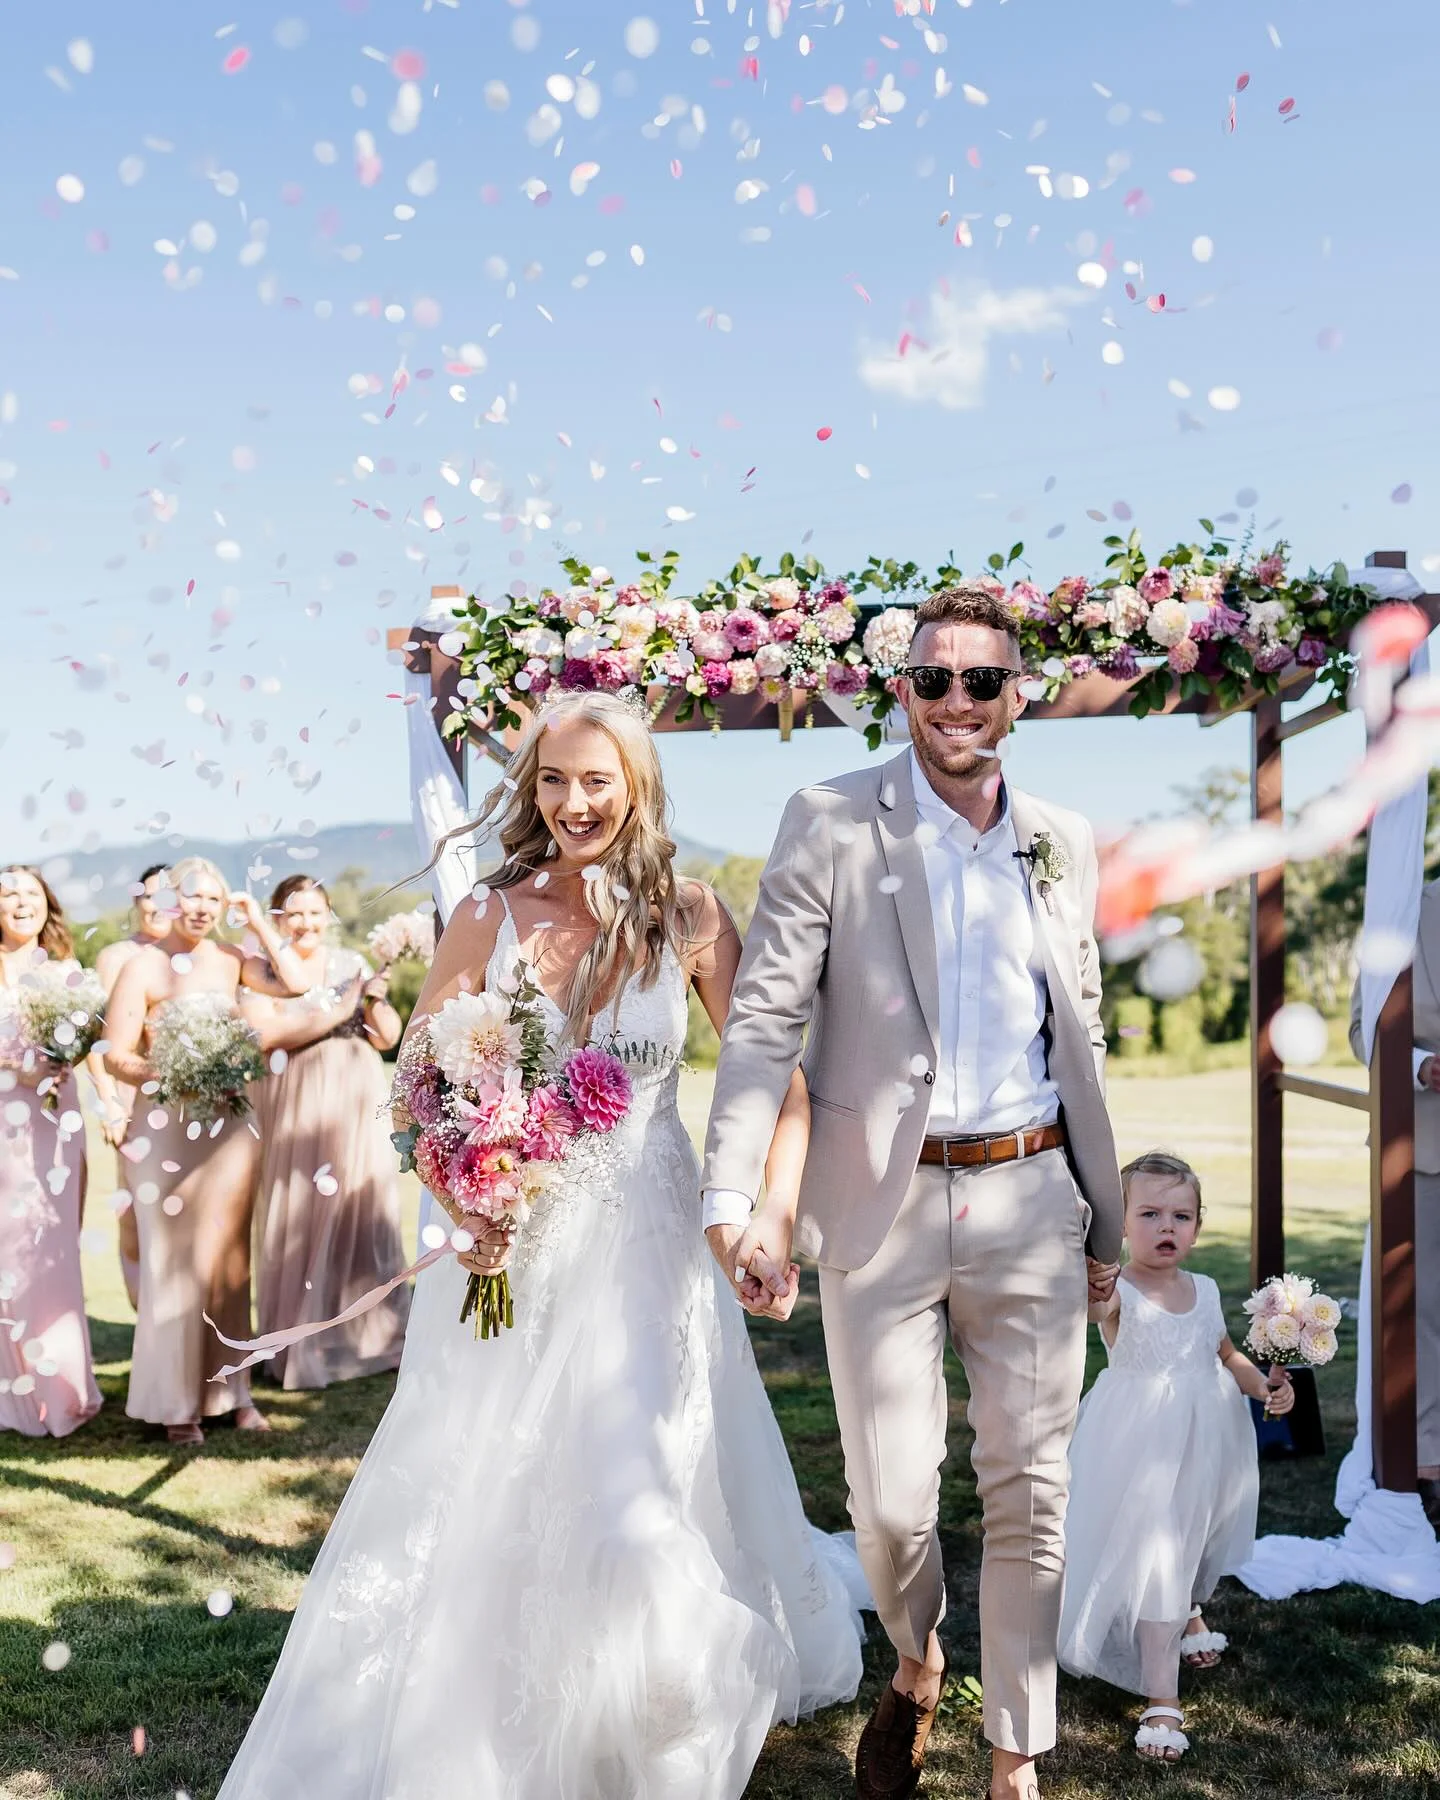 best-wedding-photographers-queensland-The-Infinity-Collective-photo-The-Infinity-Collective